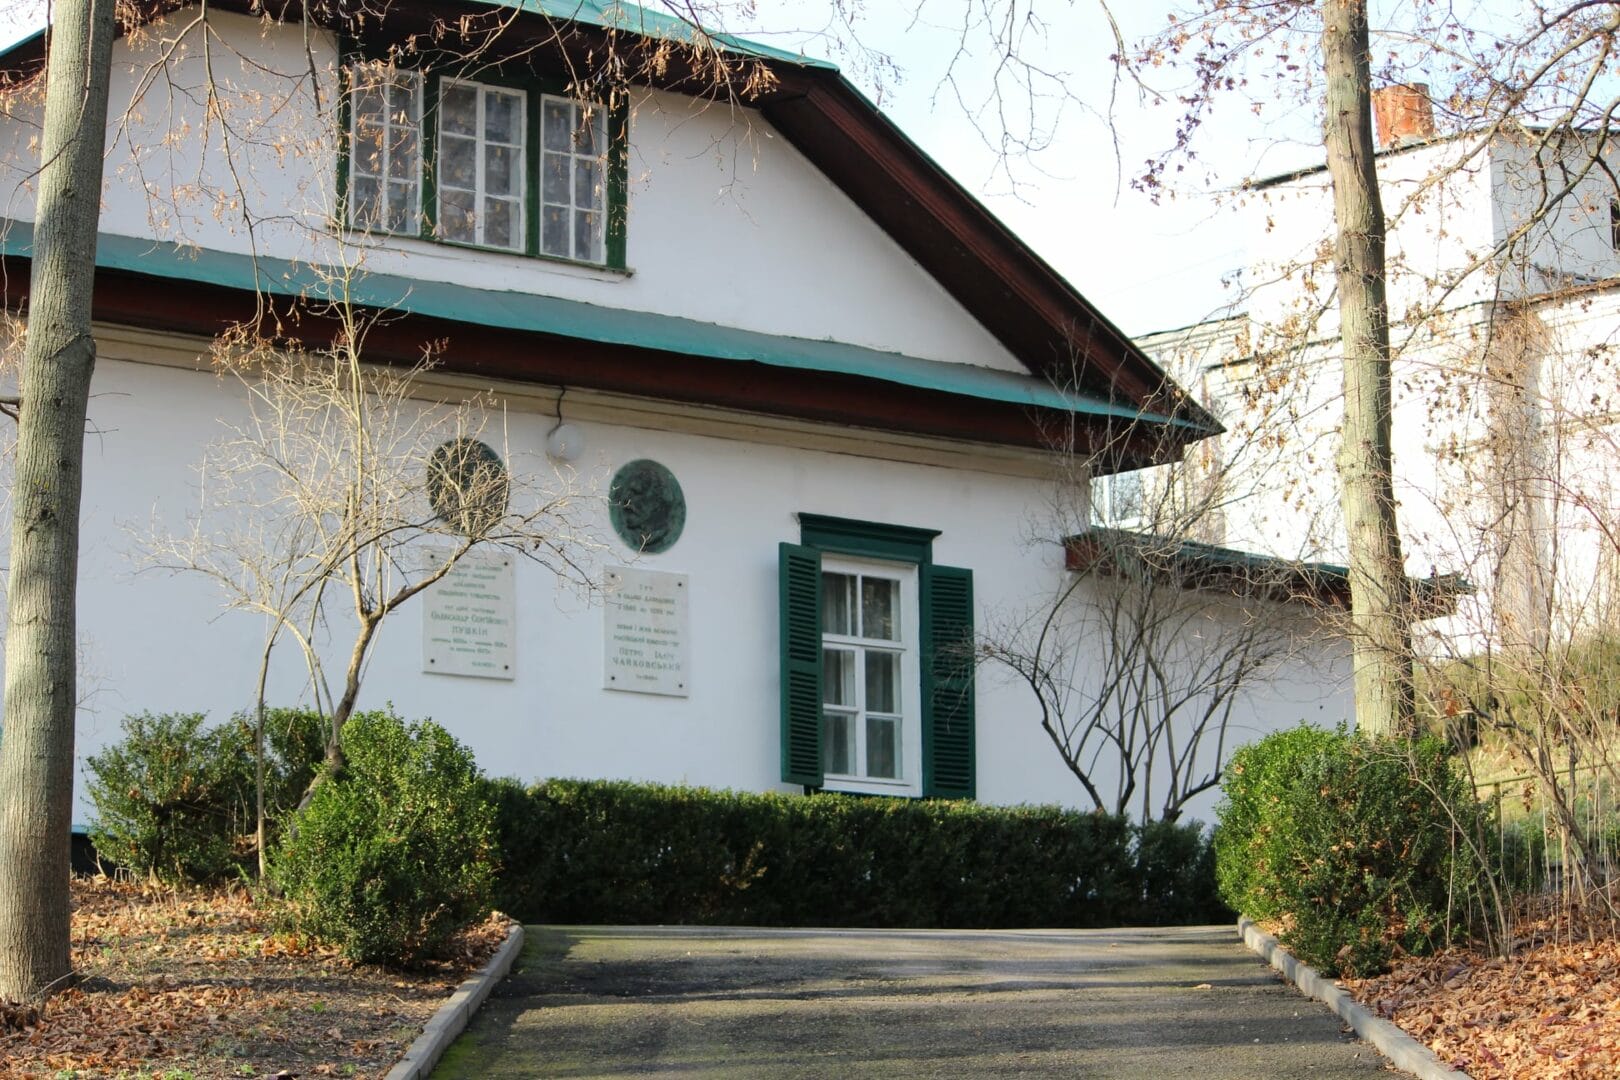 Green House Memorial Museum